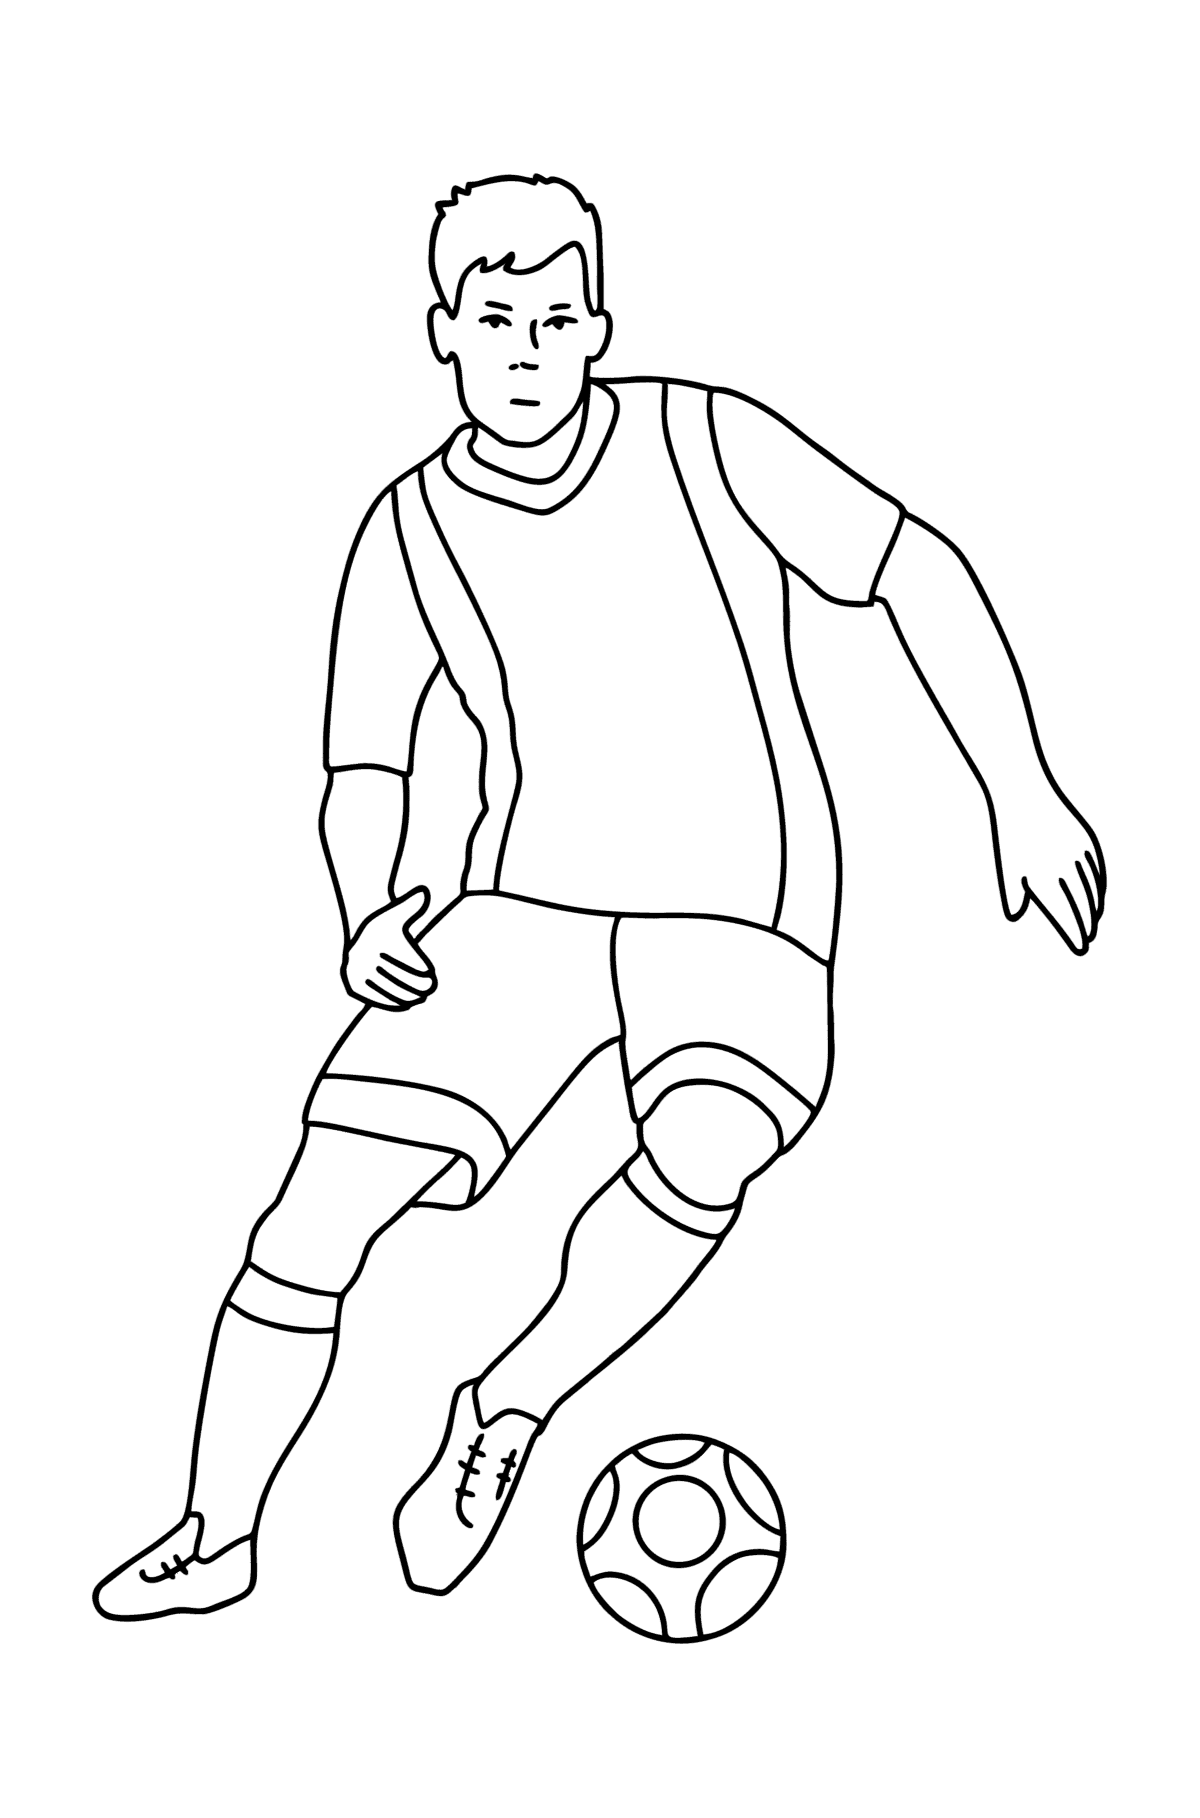 Tegning til fargelegging UEFA fotballspiller - Tegninger til fargelegging for barn